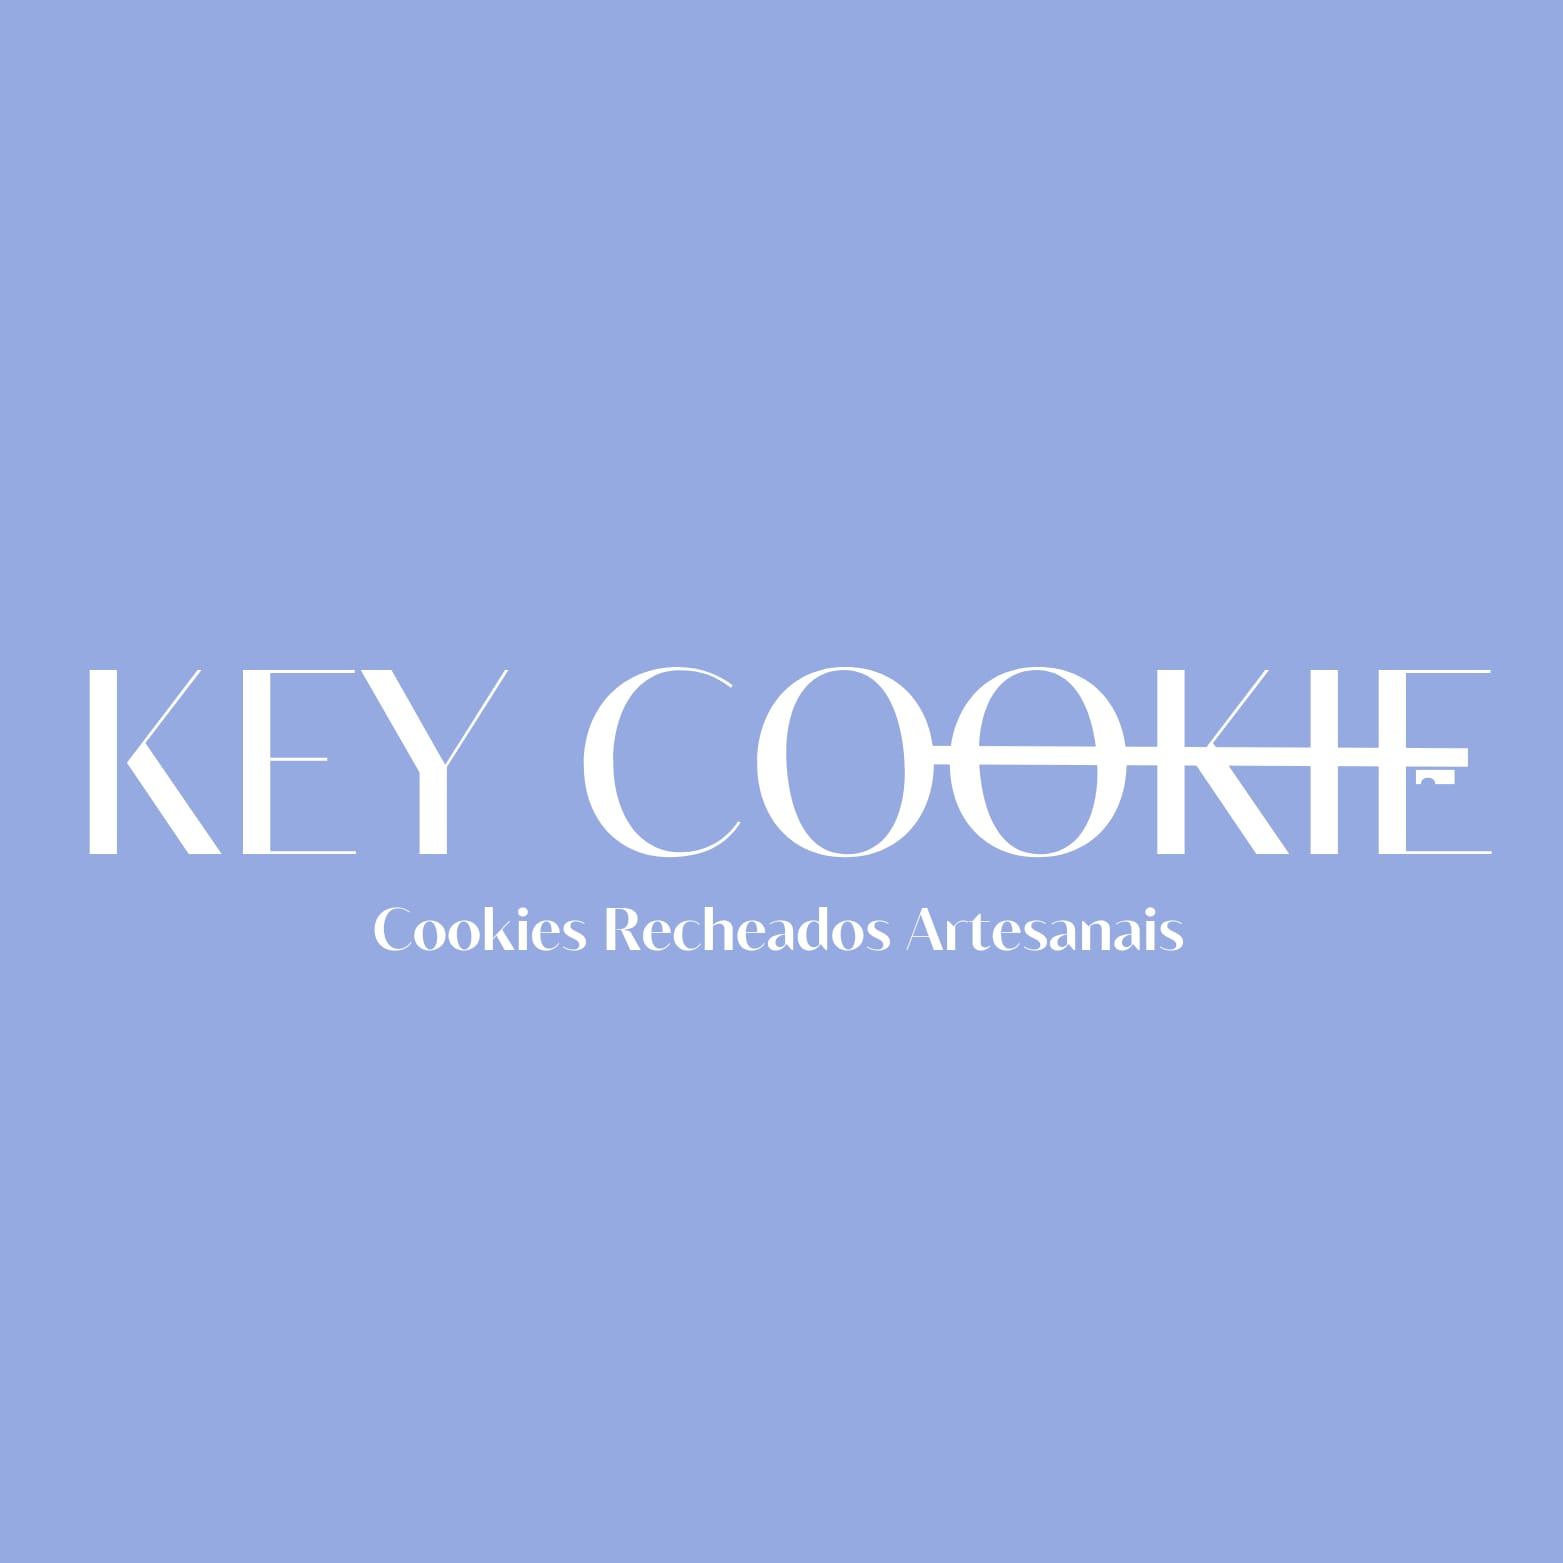 Key Cookie